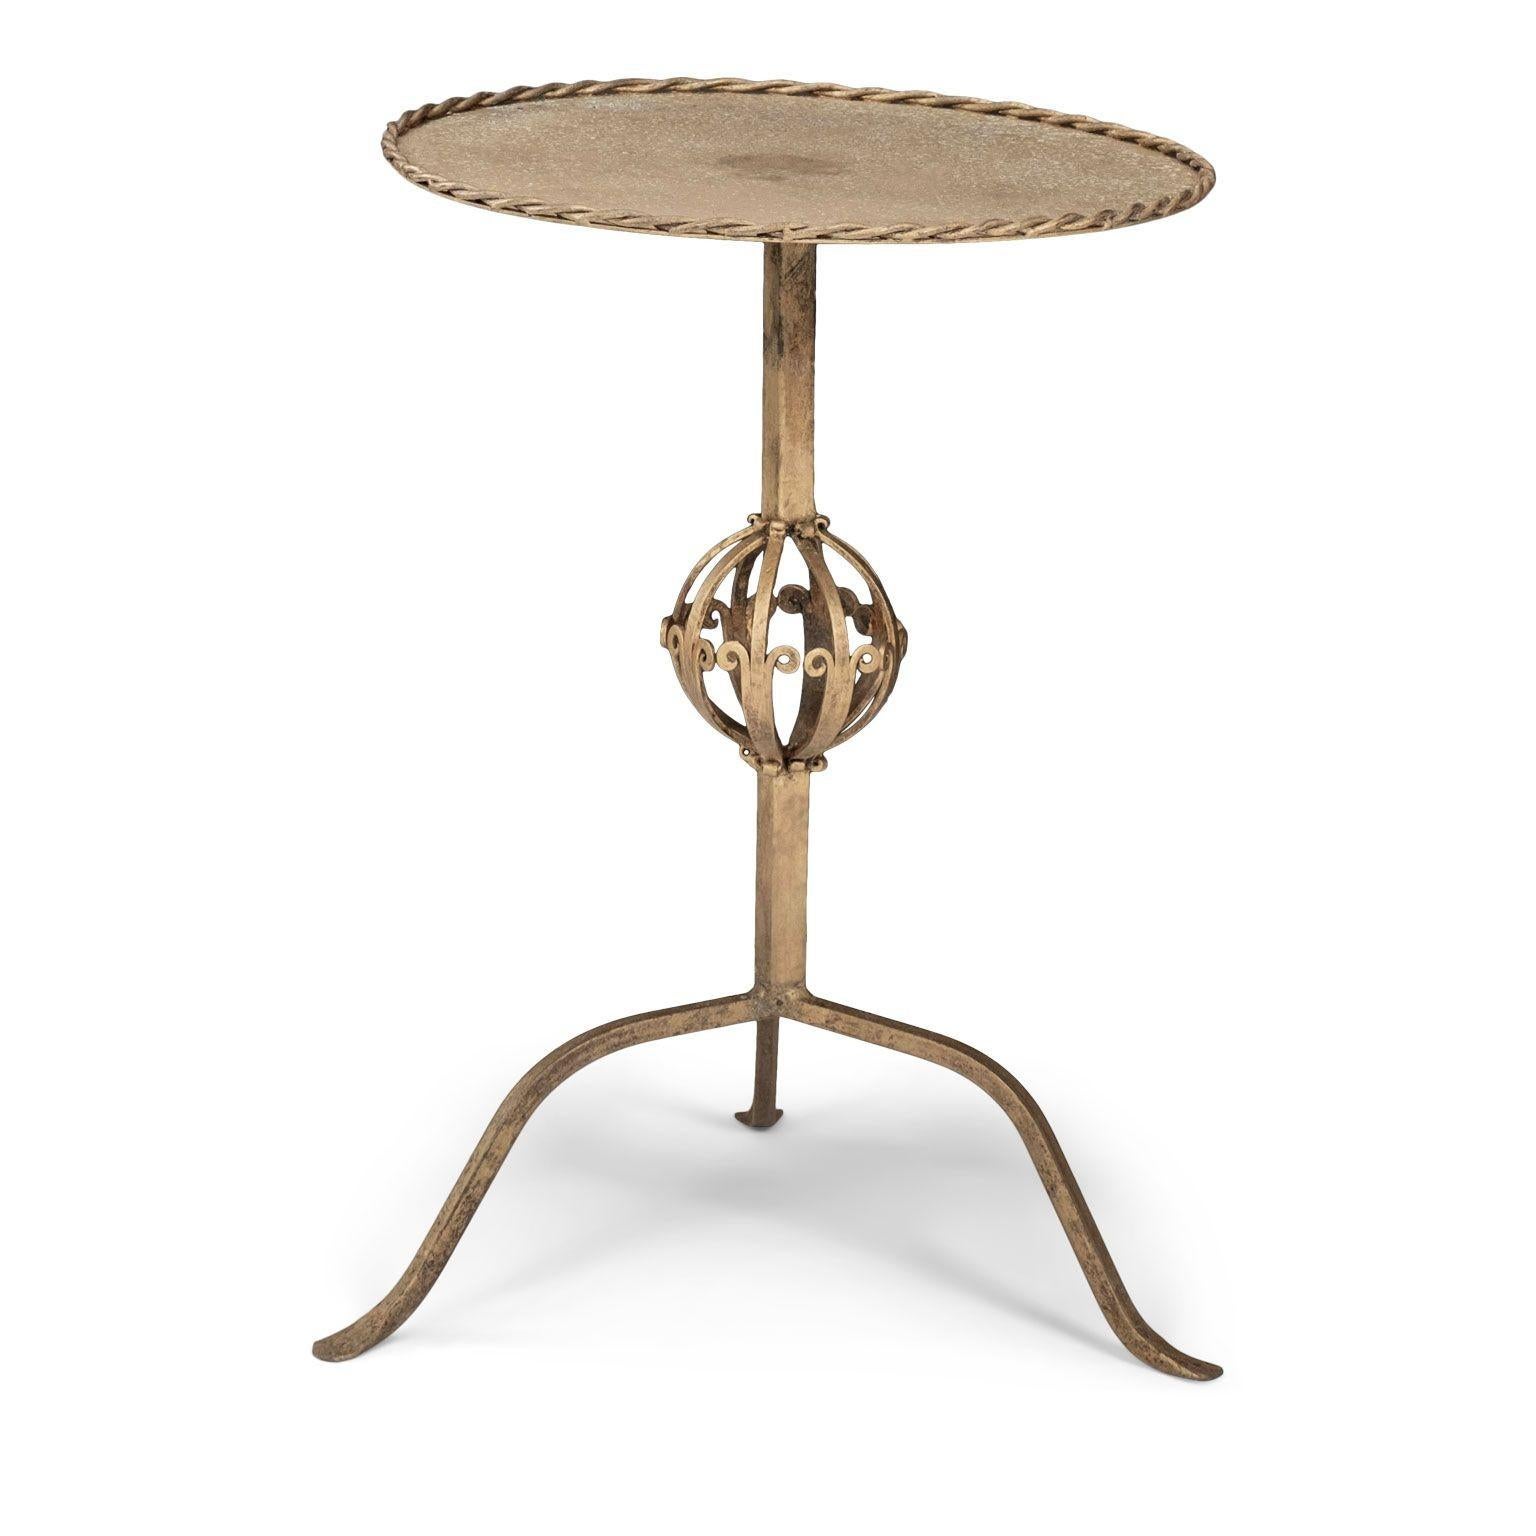 Martini-Tisch aus vergoldetem Eisen, ca. 1945-1965, Spanien. Niedrige Galerie aus gedrehtem Eisen, spiralförmige Verzierung und Dreibeinfuß. Original vergoldete Oberfläche.